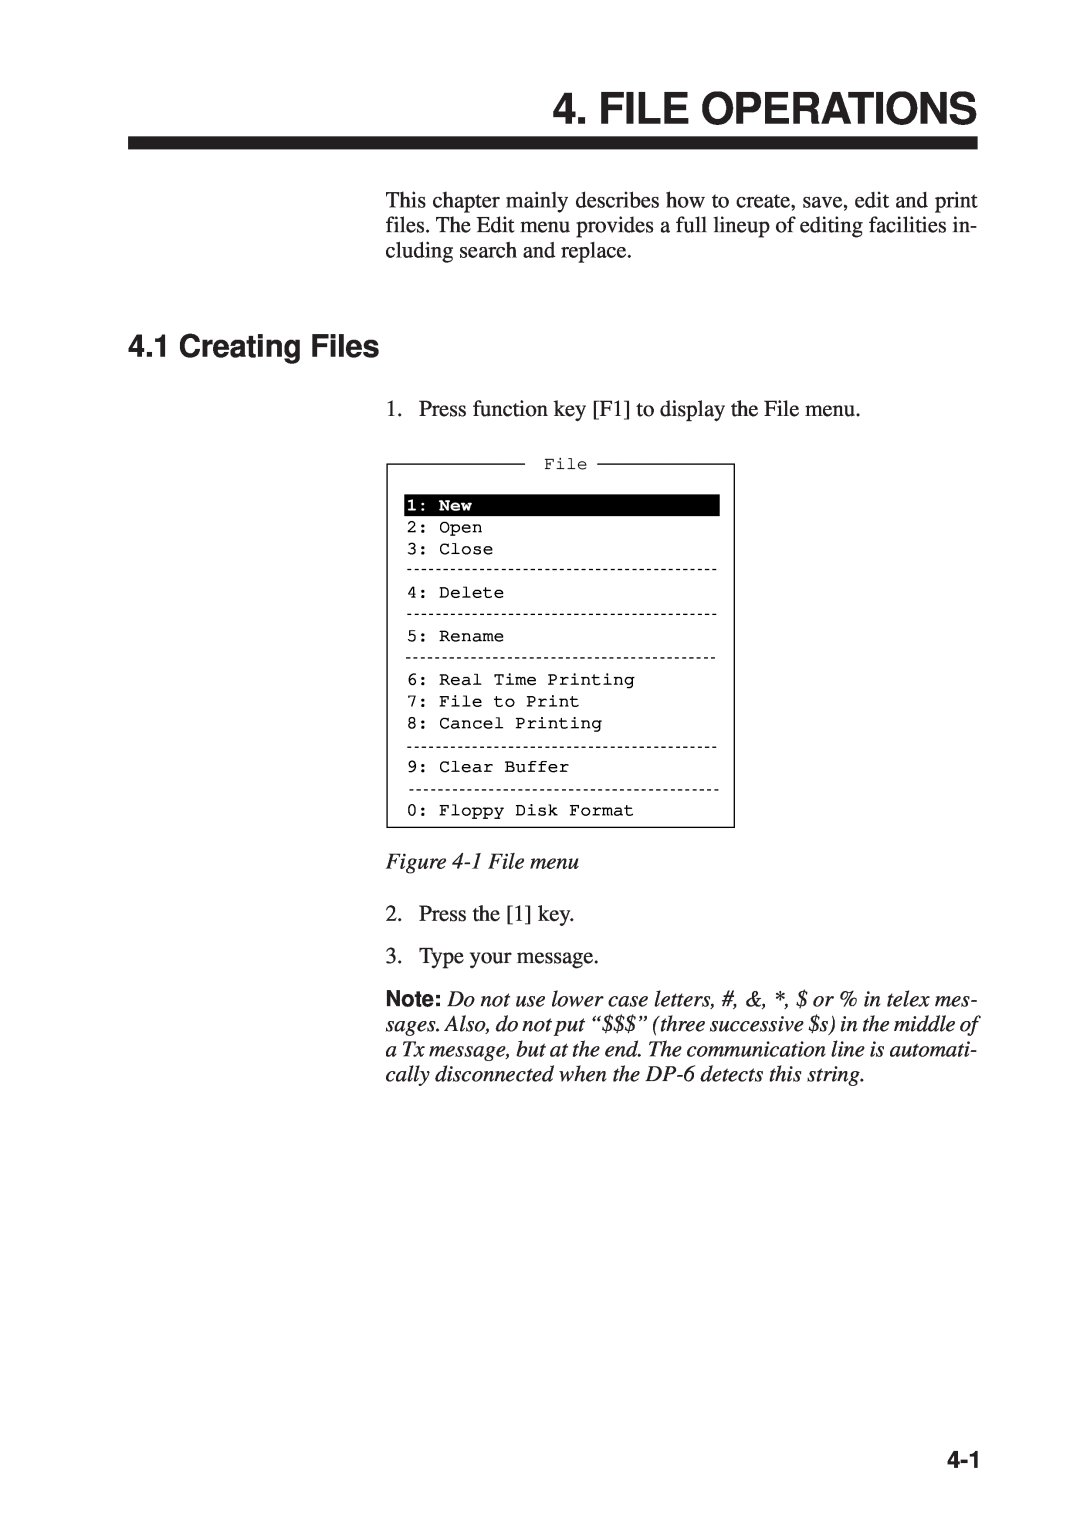 Furuno RC-1500-1T manual File Operations, Creating Files, 1 File menu 